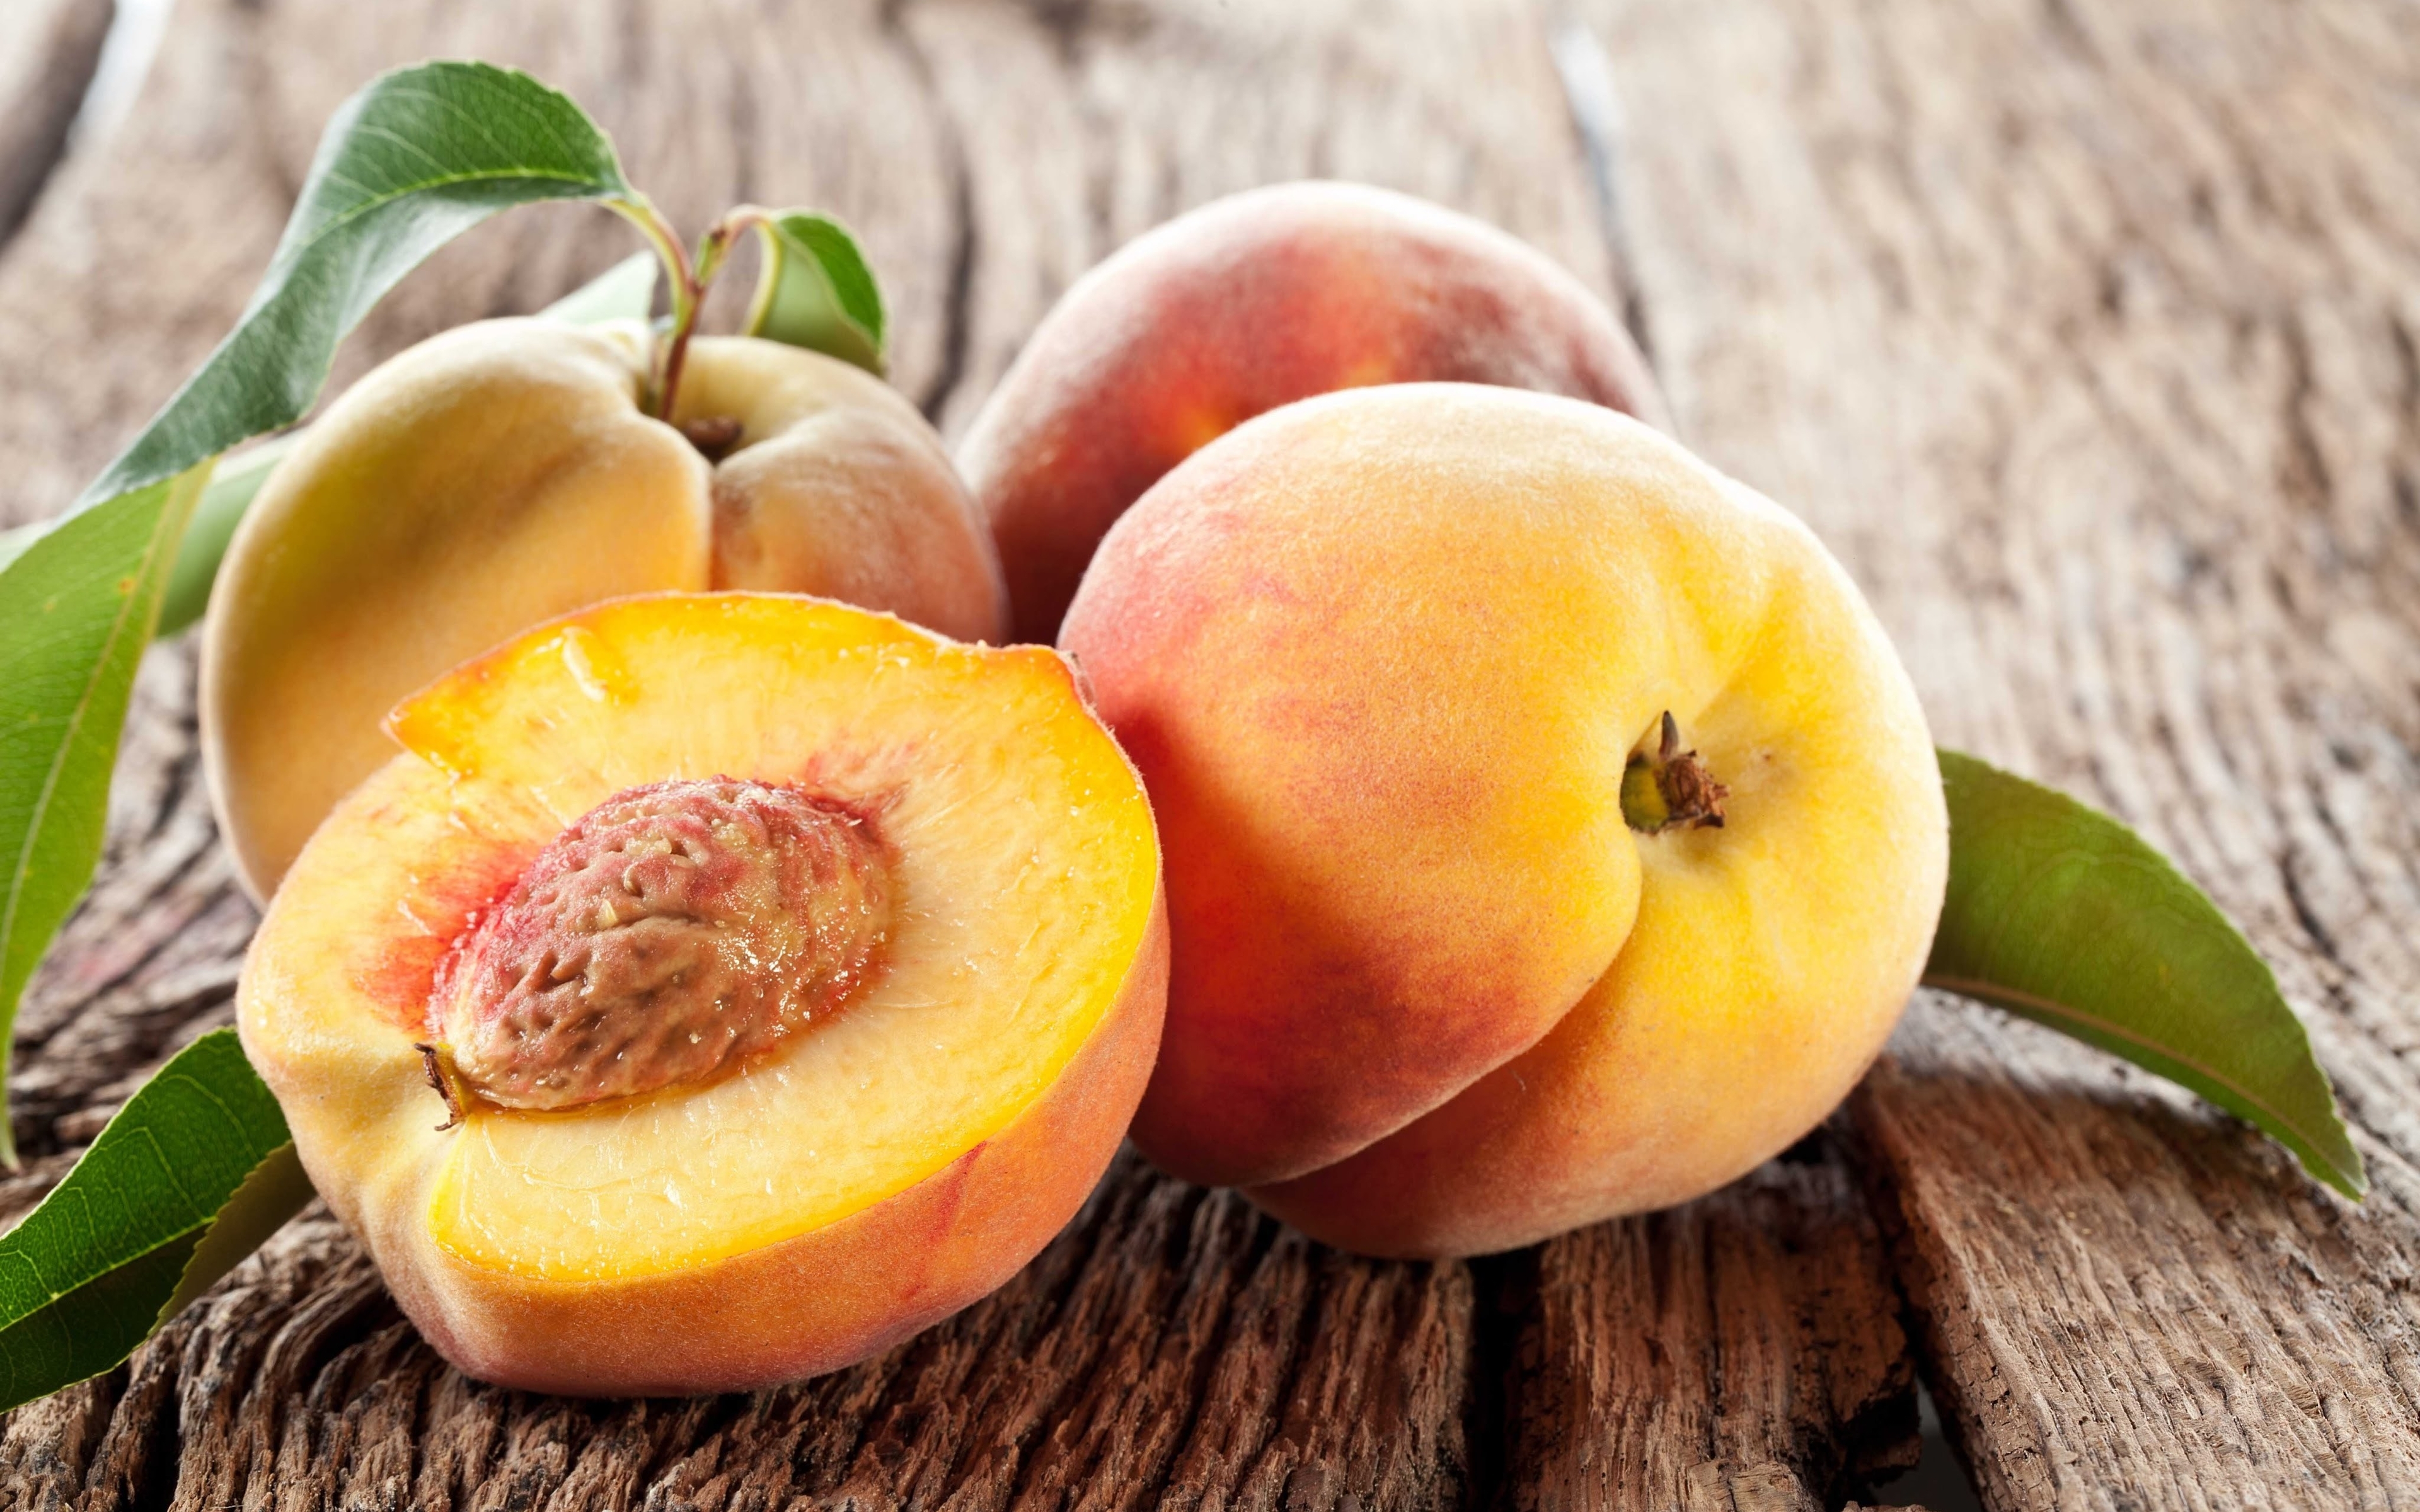 Картинка: Персики, витамины, фрукты, урожай